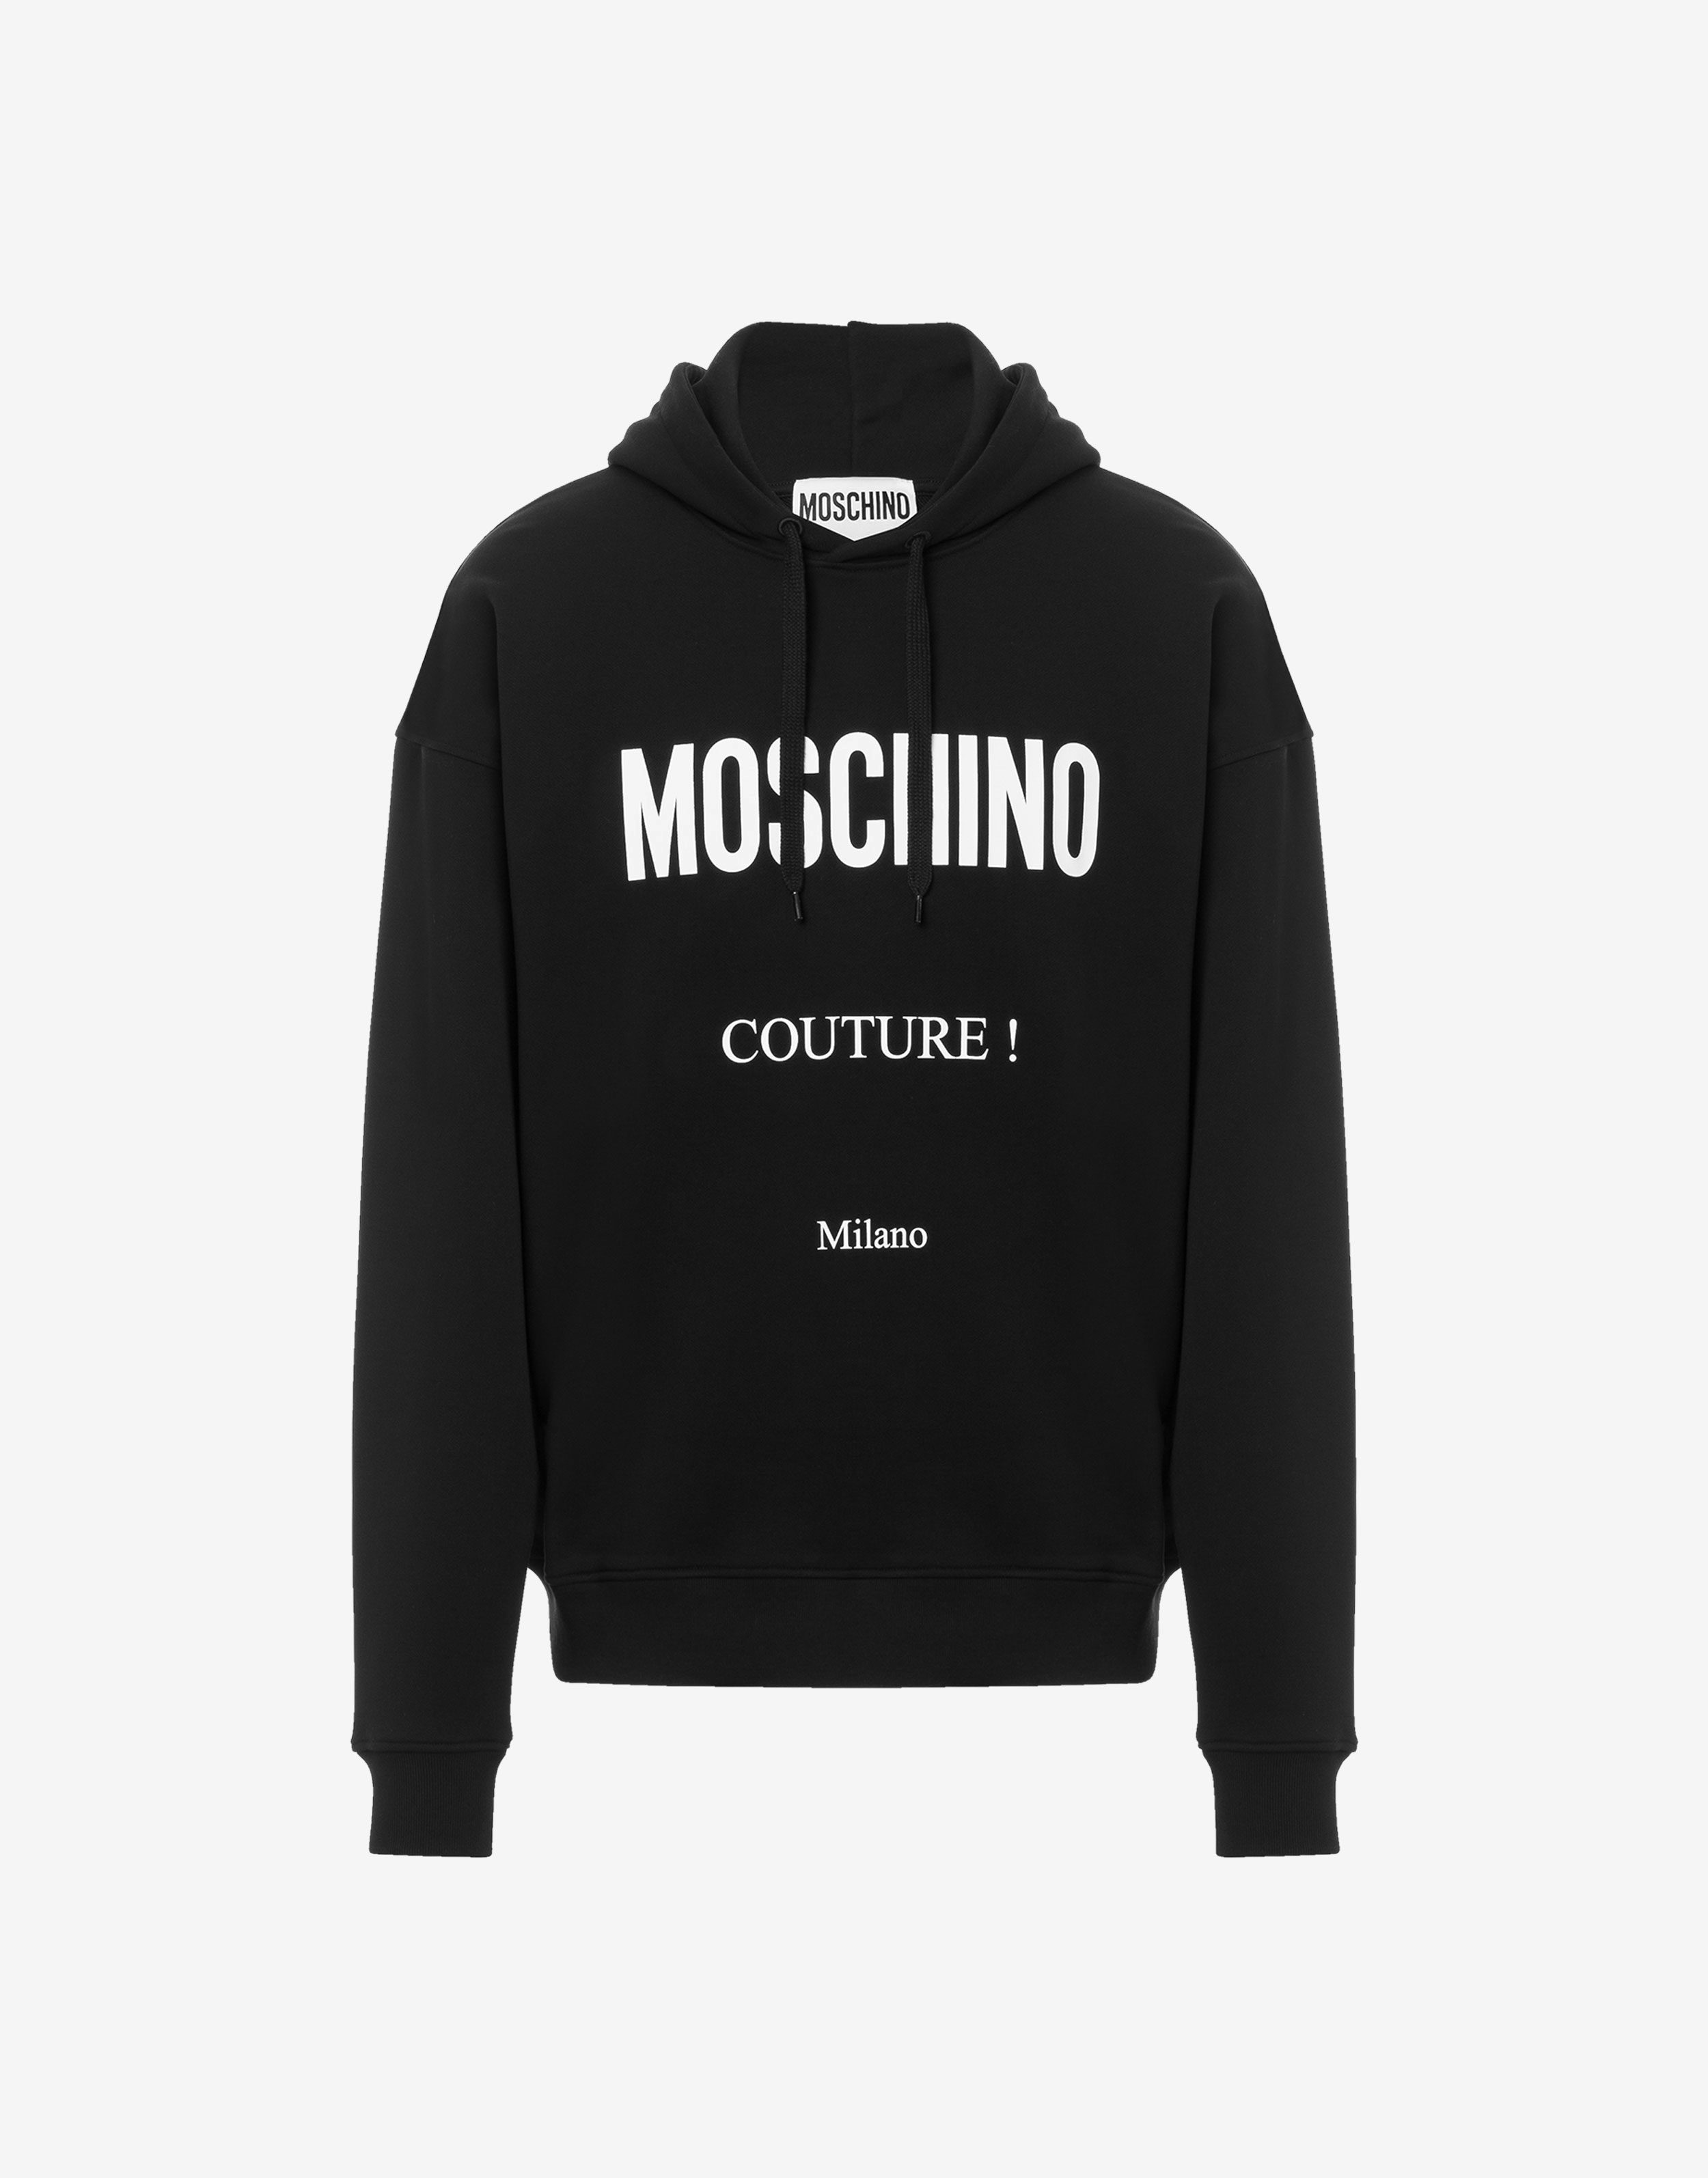 Baumwoll-Sweatshirt Moschino Couture